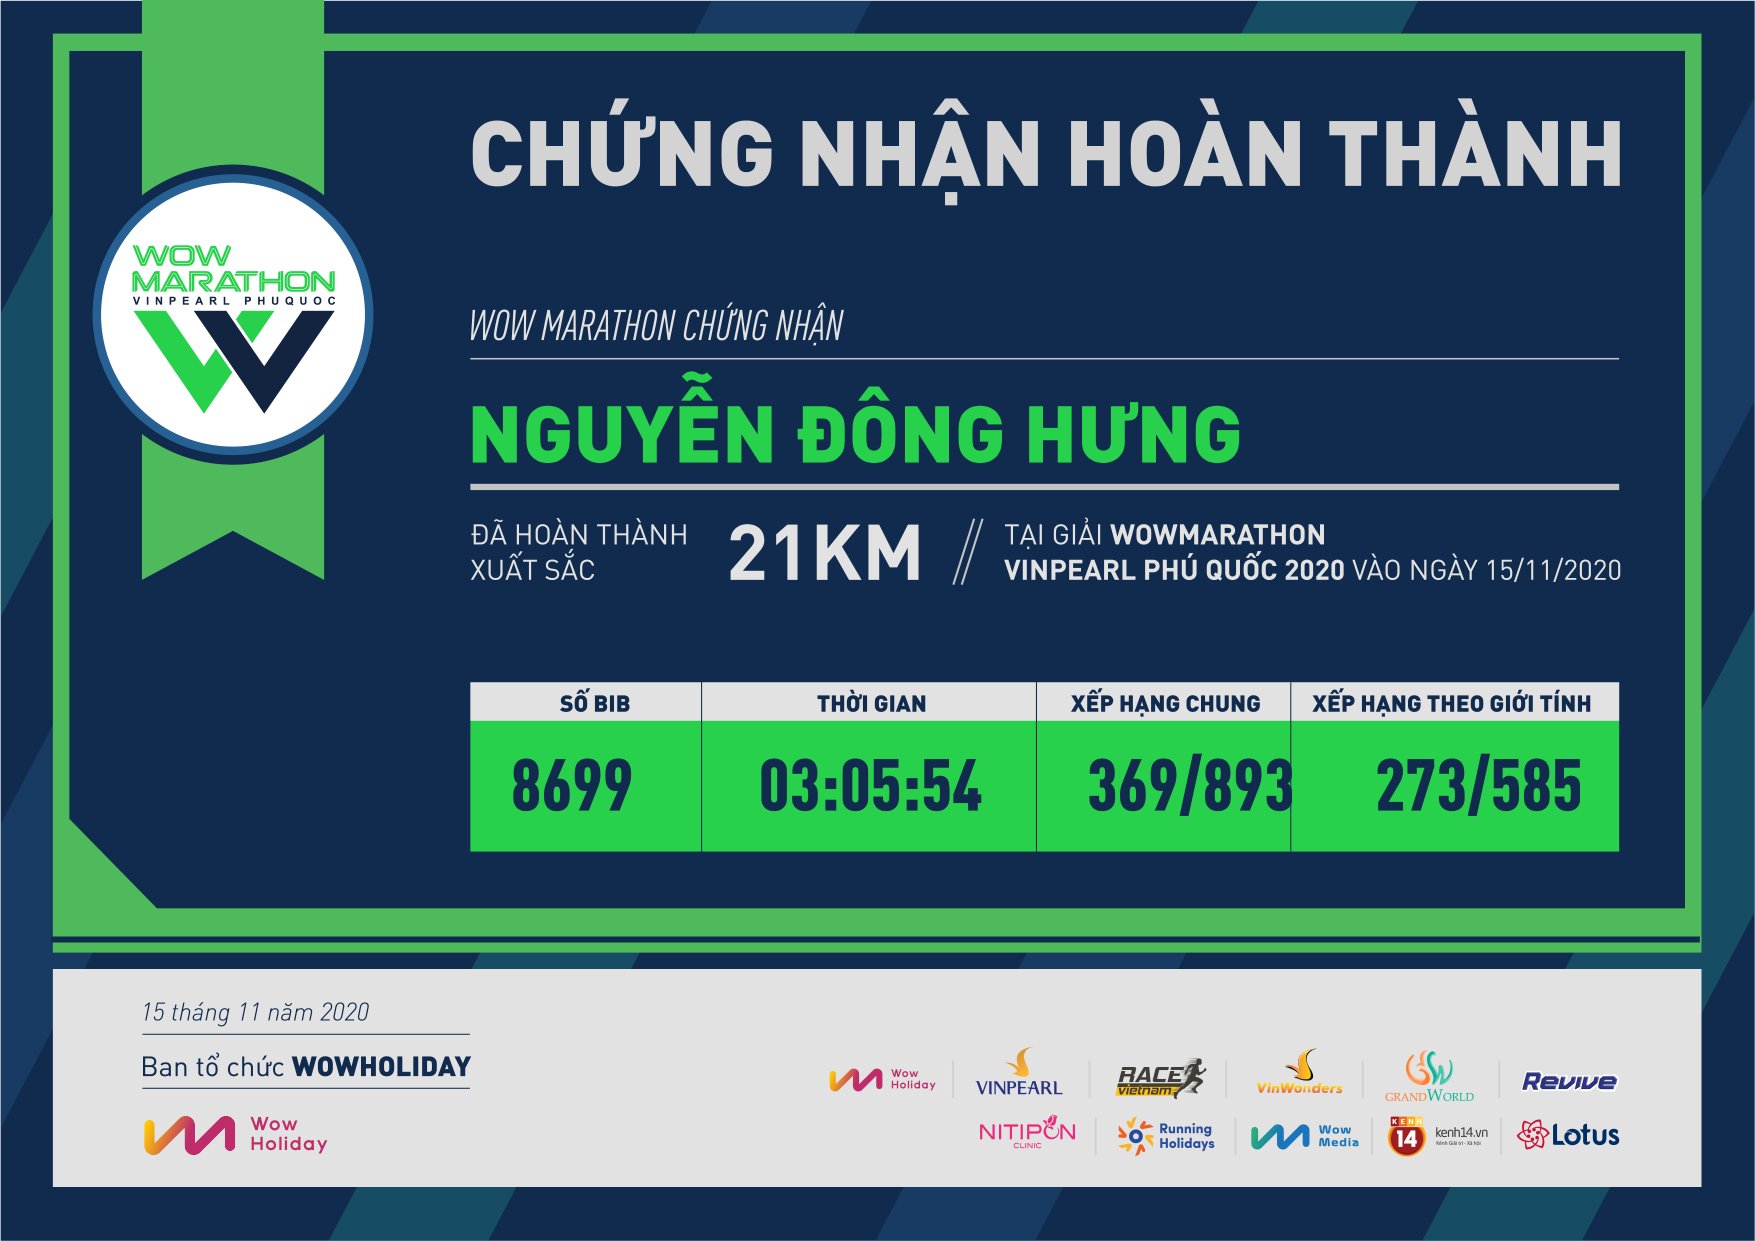 8699 - Nguyễn Đông Hưng